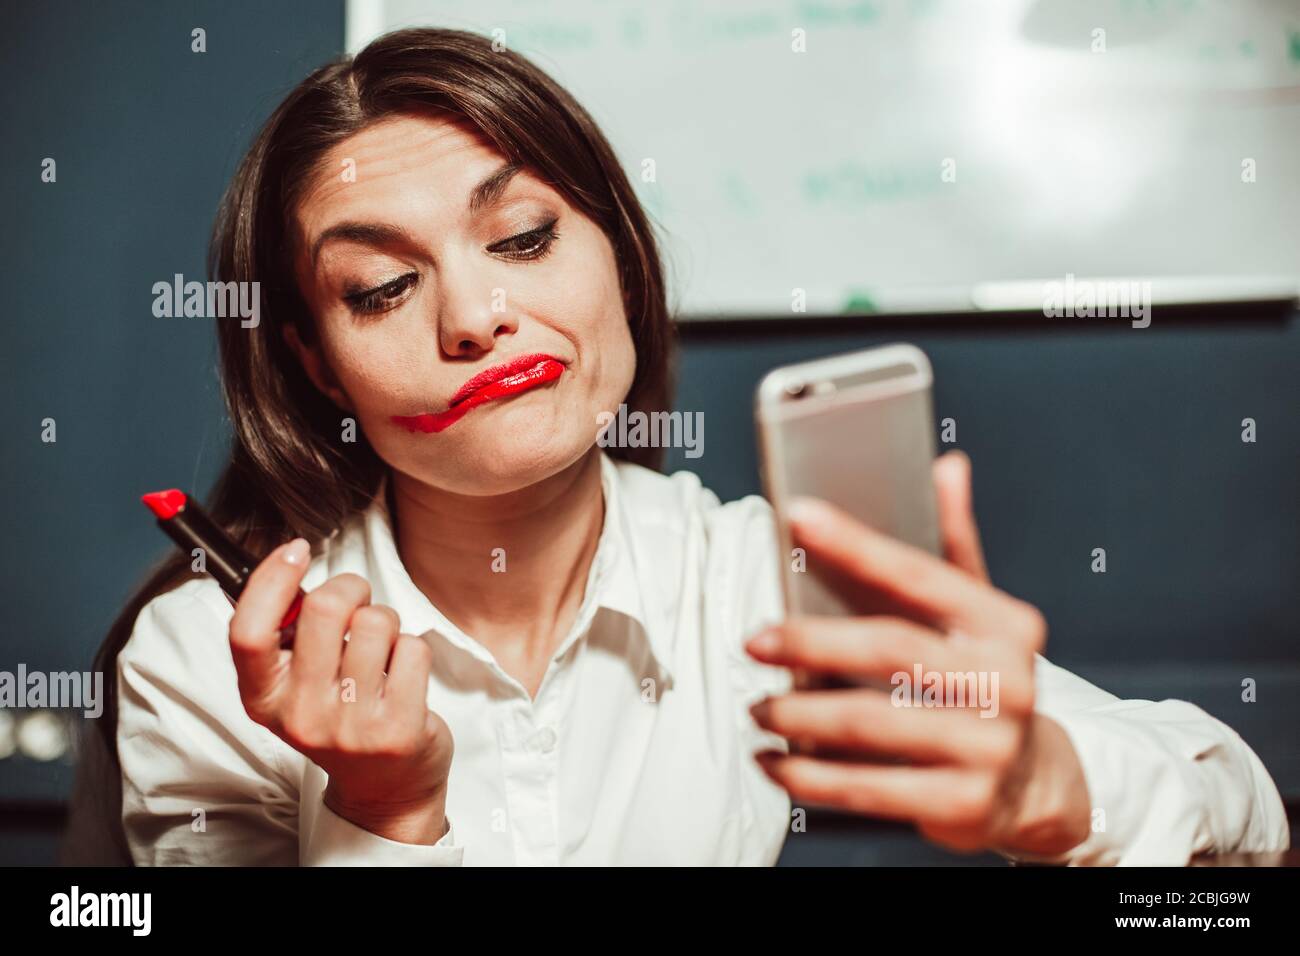 Verrückte Büroleiterin Geschäftsfrau macht Make-up mit roten Lippenstift am Arbeitsplatz mit Handy statt Spiegel. Getöntes Bild Stockfoto